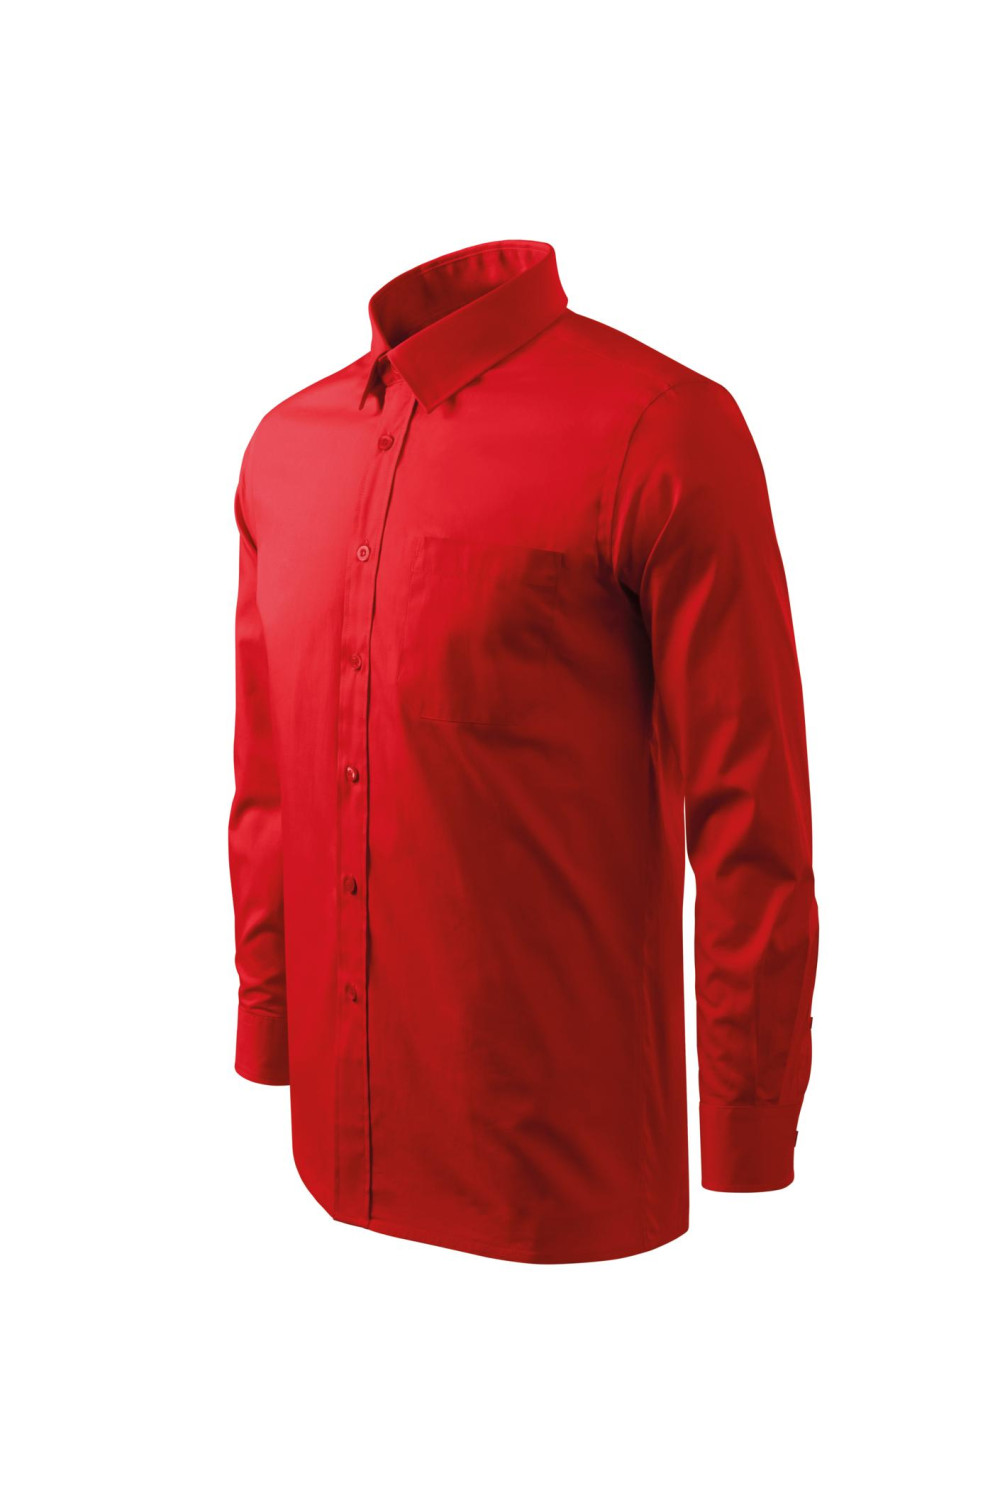 Koszula męska, długi rękaw. 100 % bawełna 209 koszule czerwony